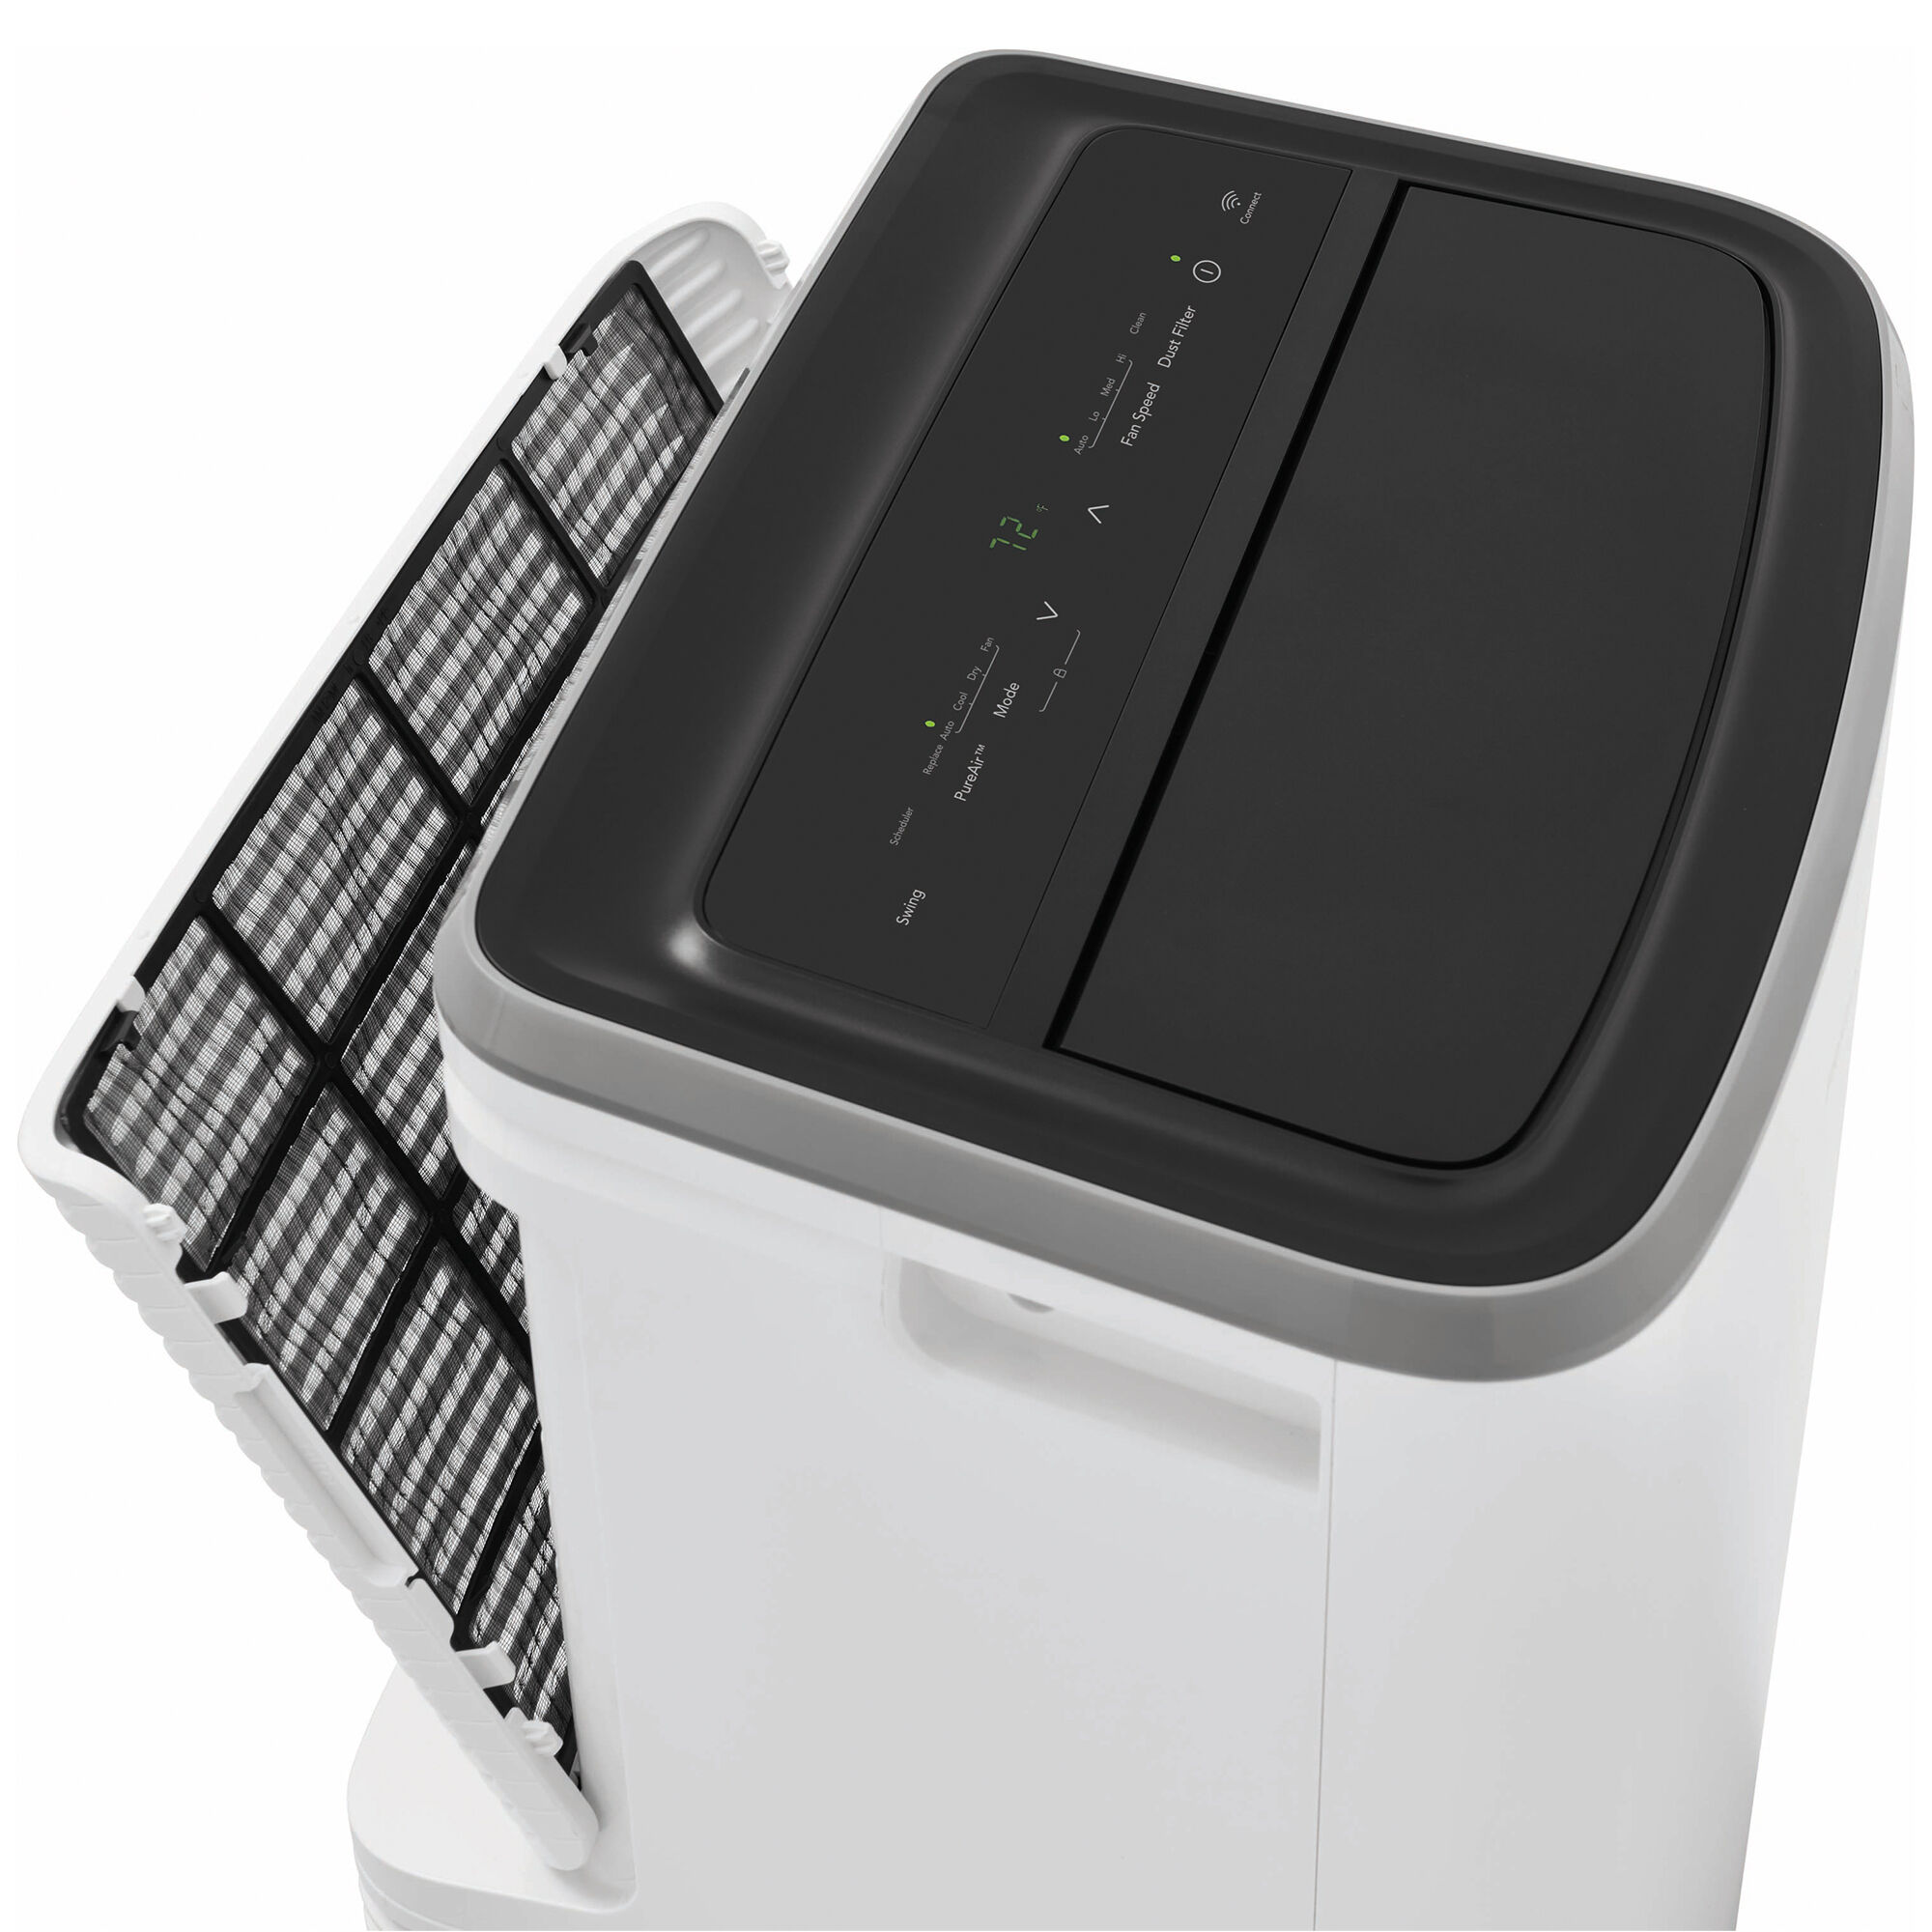 Frigidaire 12,000 BTU (8,000 BTU DOE) Smart Portable Air Conditioner with 3  Fan Speeds, Sleep Mode & Remote Control - White